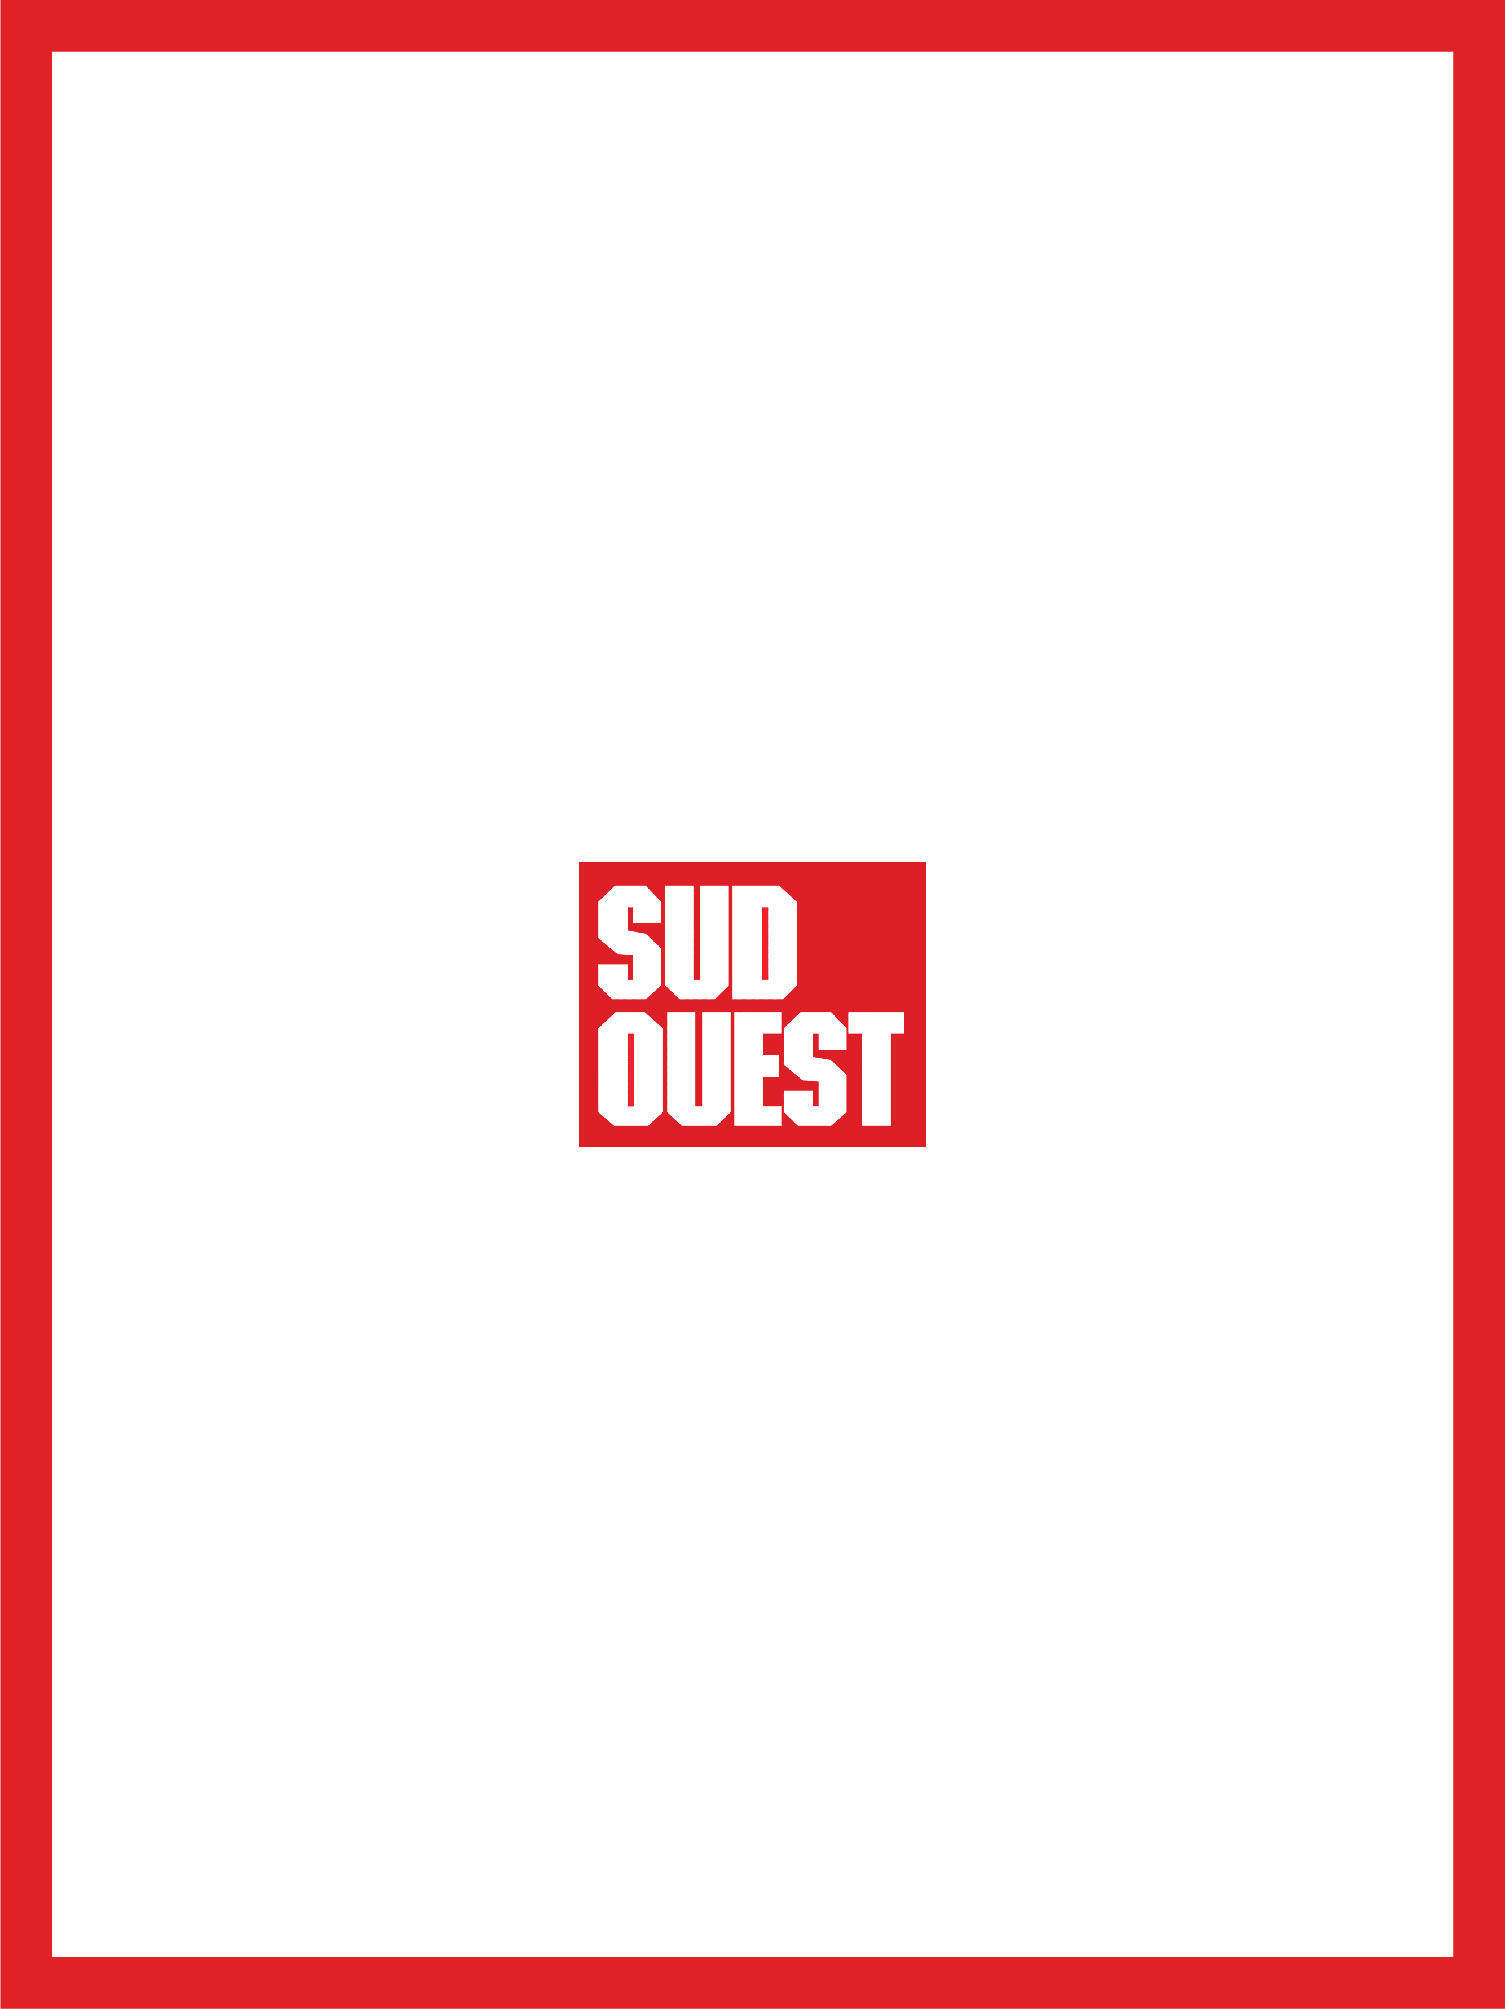 couverture et logo sud ouest